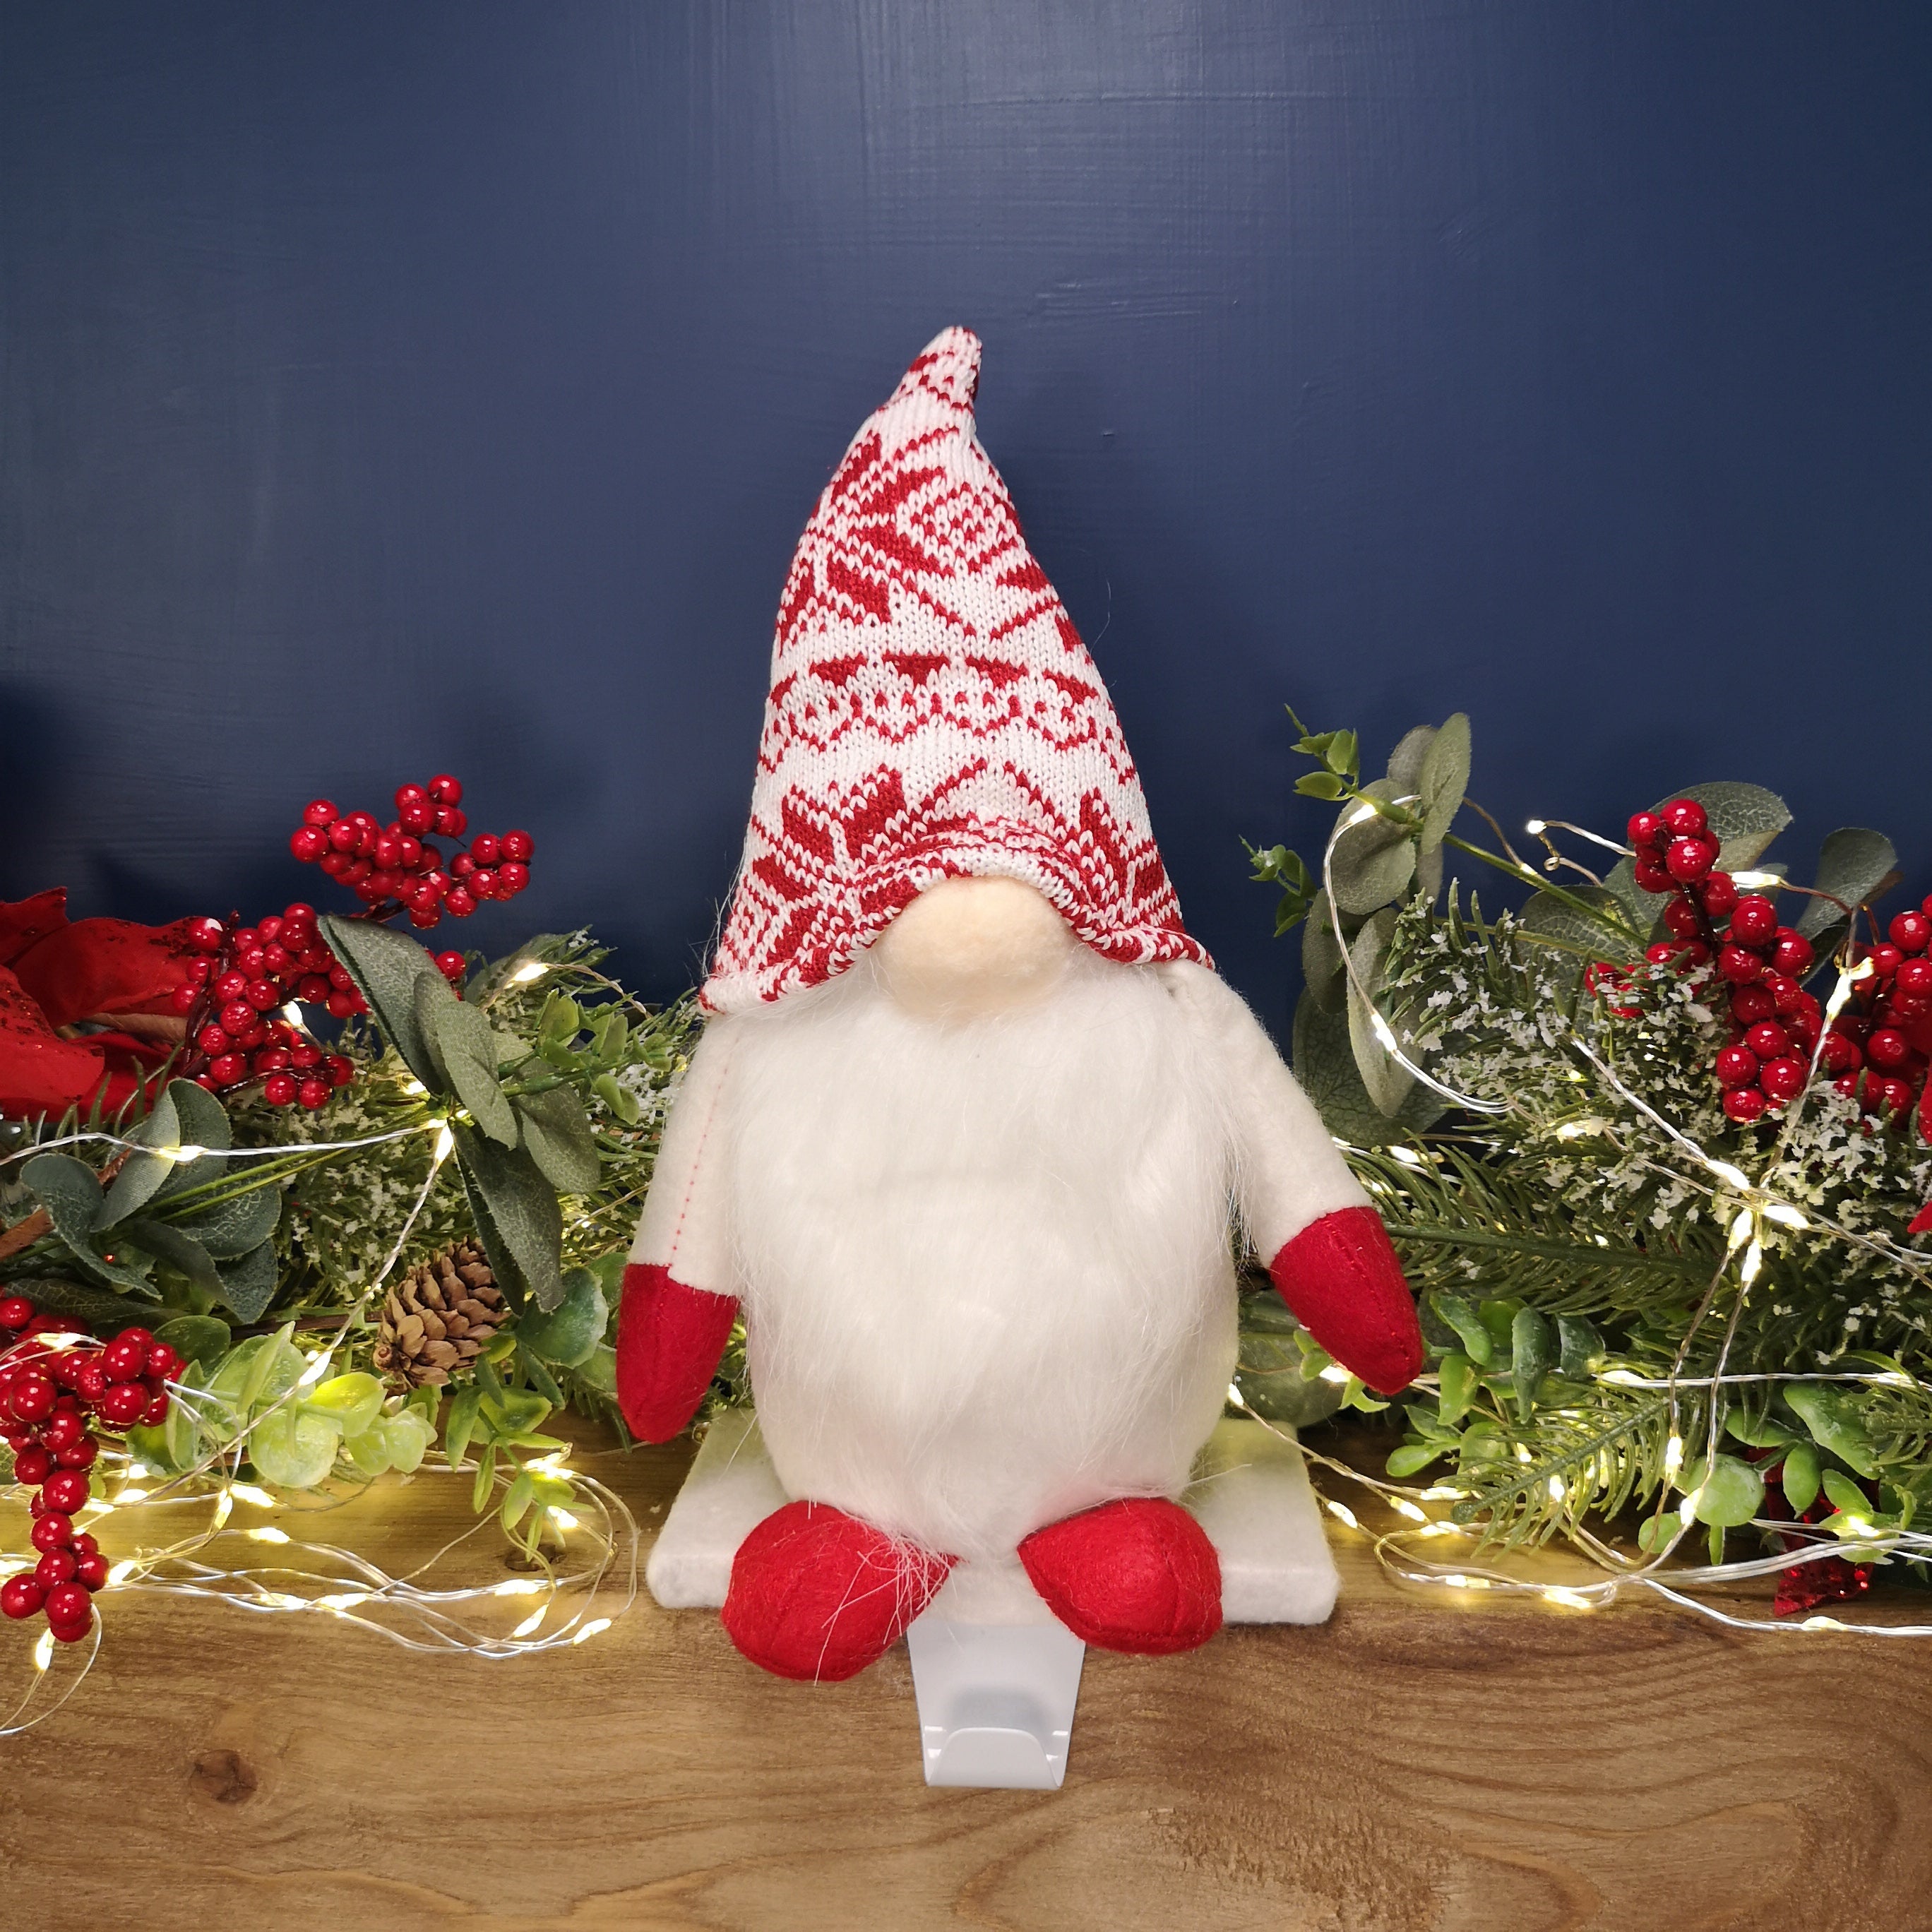 30cm Plush Gnome Gonk Christmas Stocking Holder Decoration with White Body